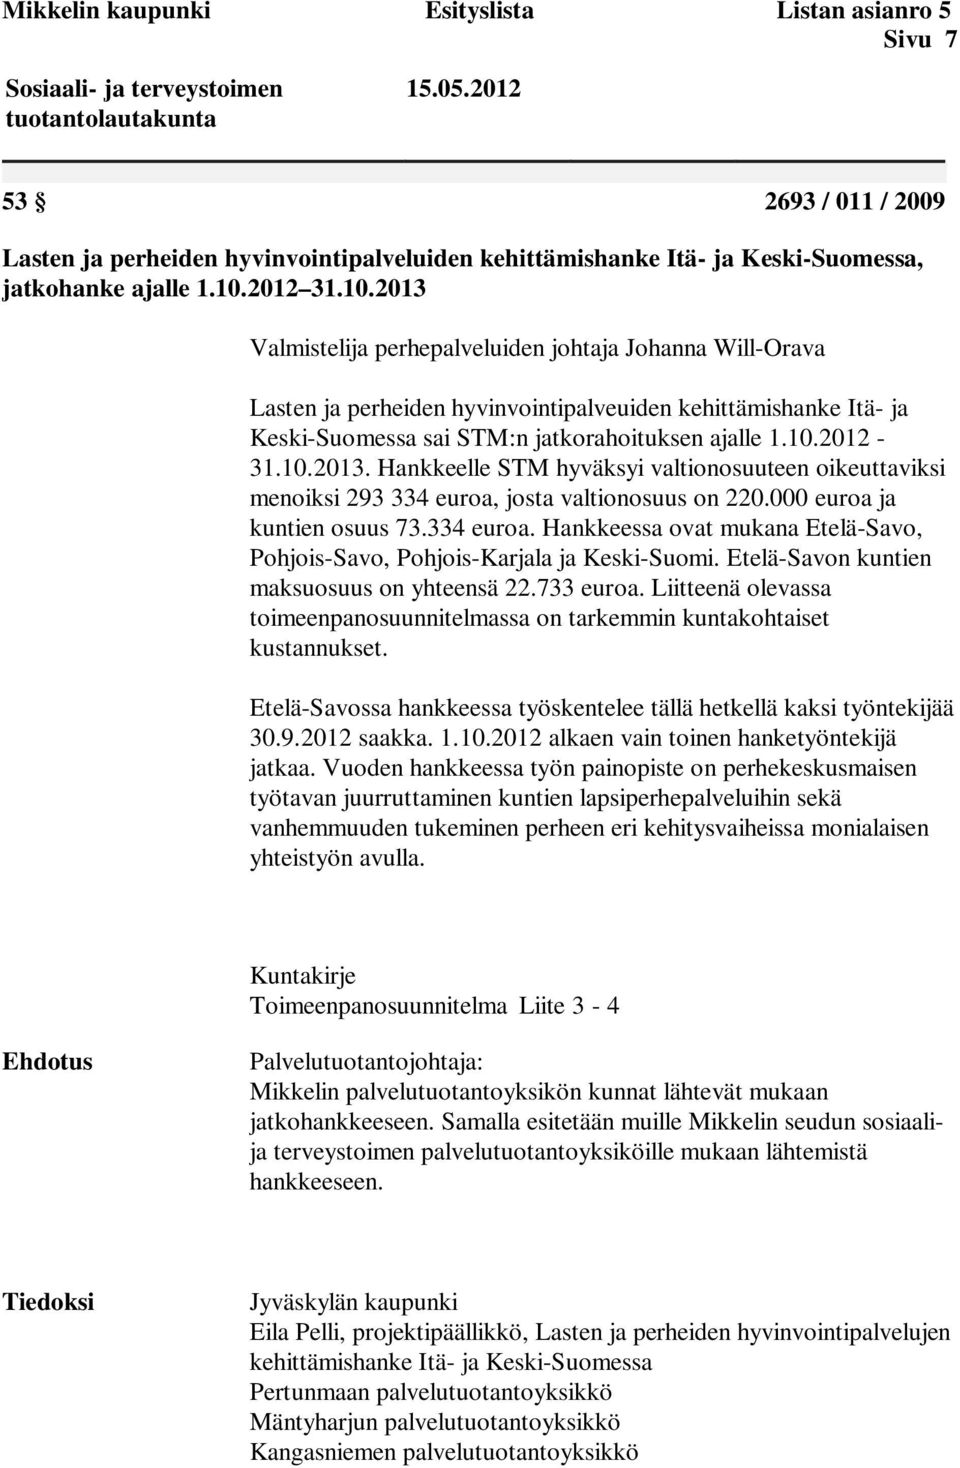 10.2013. Hankkeelle STM hyväksyi valtionosuuteen oikeuttaviksi menoiksi 293 334 euroa, josta valtionosuus on 220.000 euroa ja kuntien osuus 73.334 euroa. Hankkeessa ovat mukana Etelä-Savo, Pohjois-Savo, Pohjois-Karjala ja Keski-Suomi.